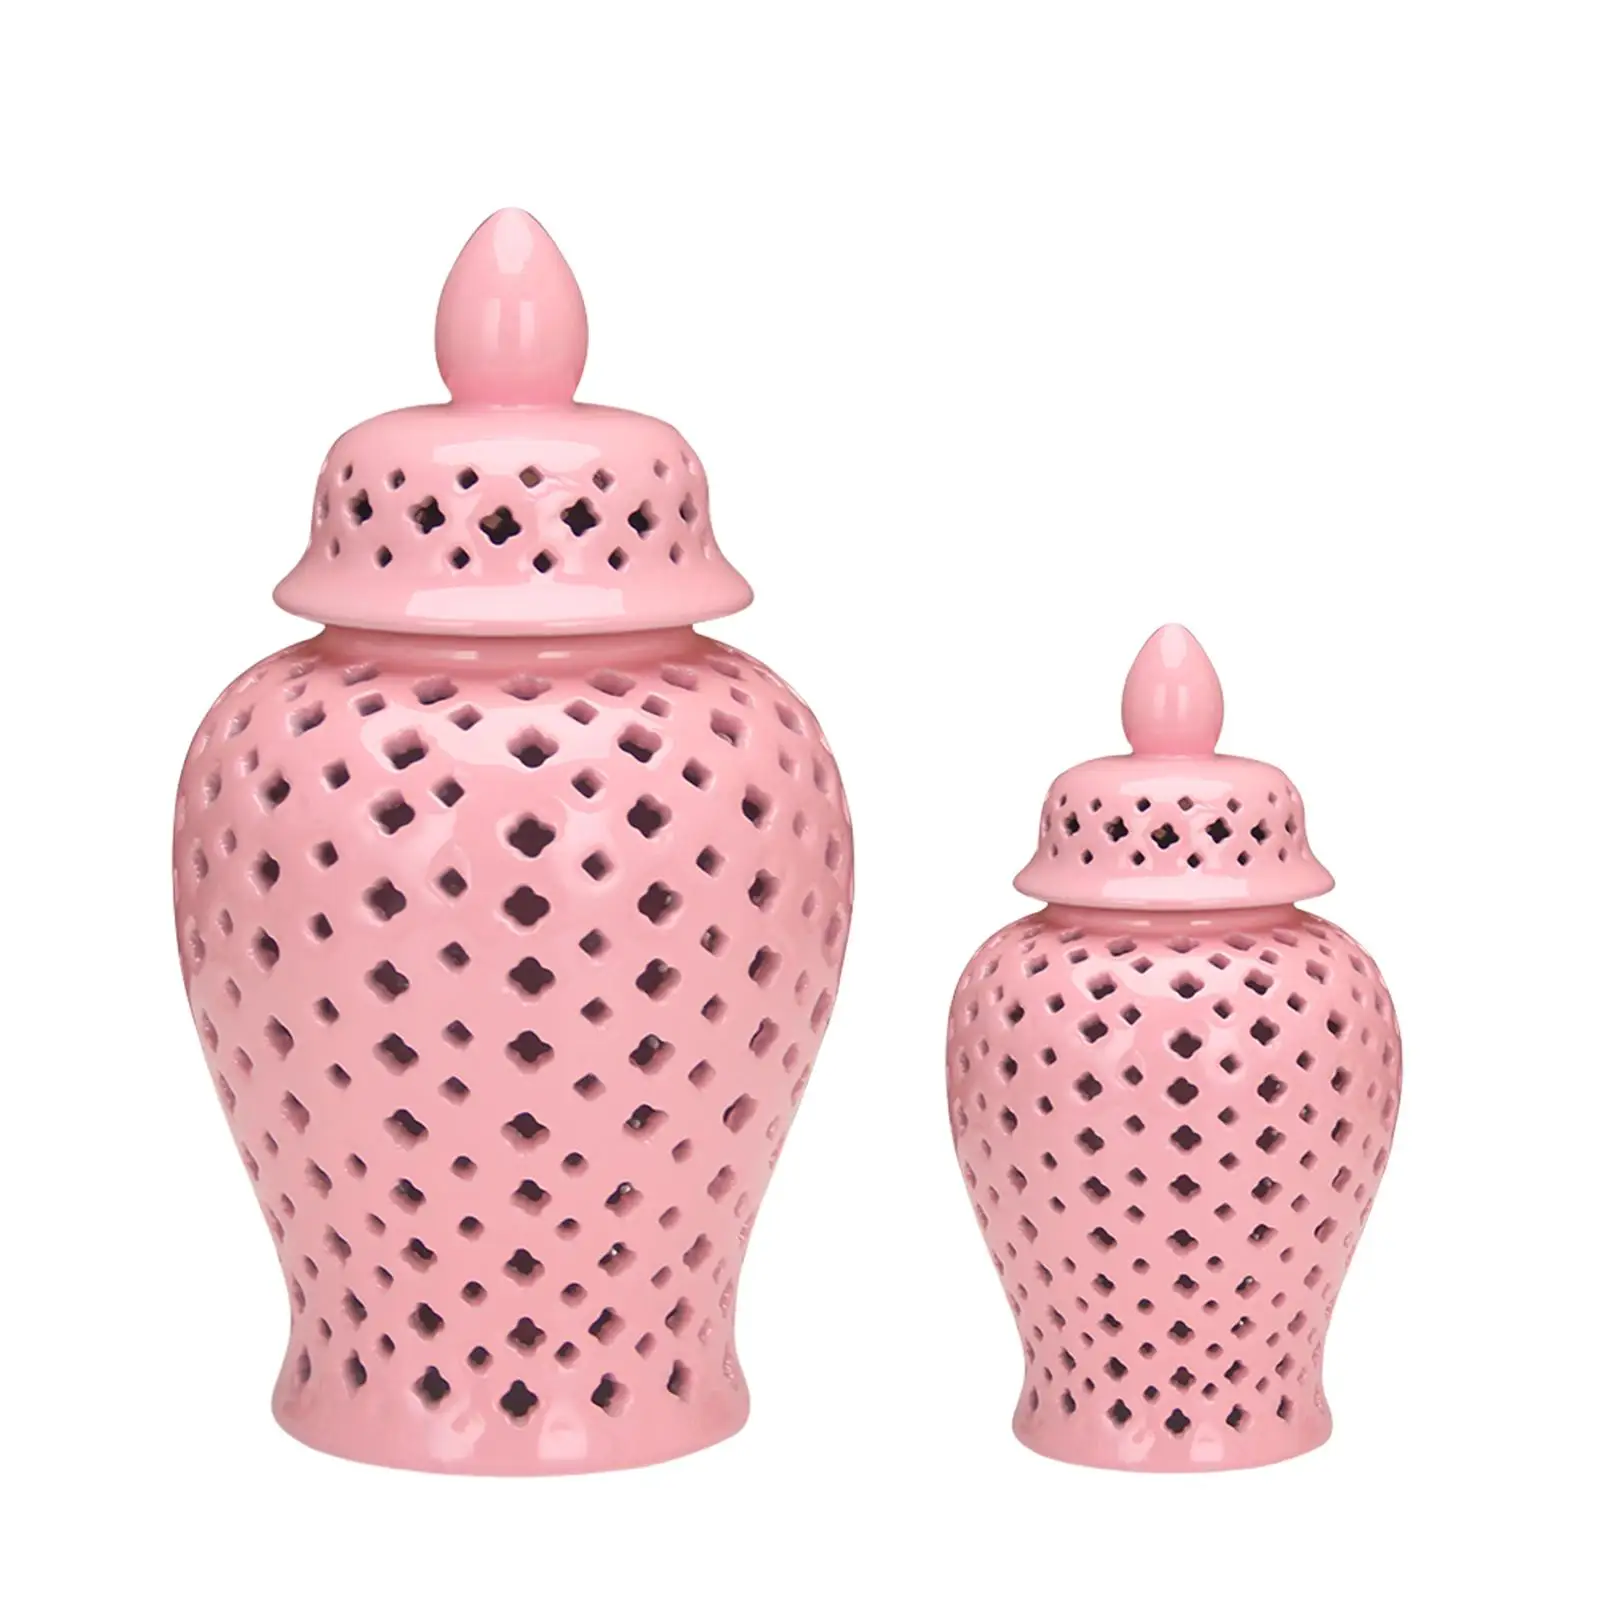 Ceramic Ginger Jar Elegant Decorative Vase for Home Table Centerpiece Office